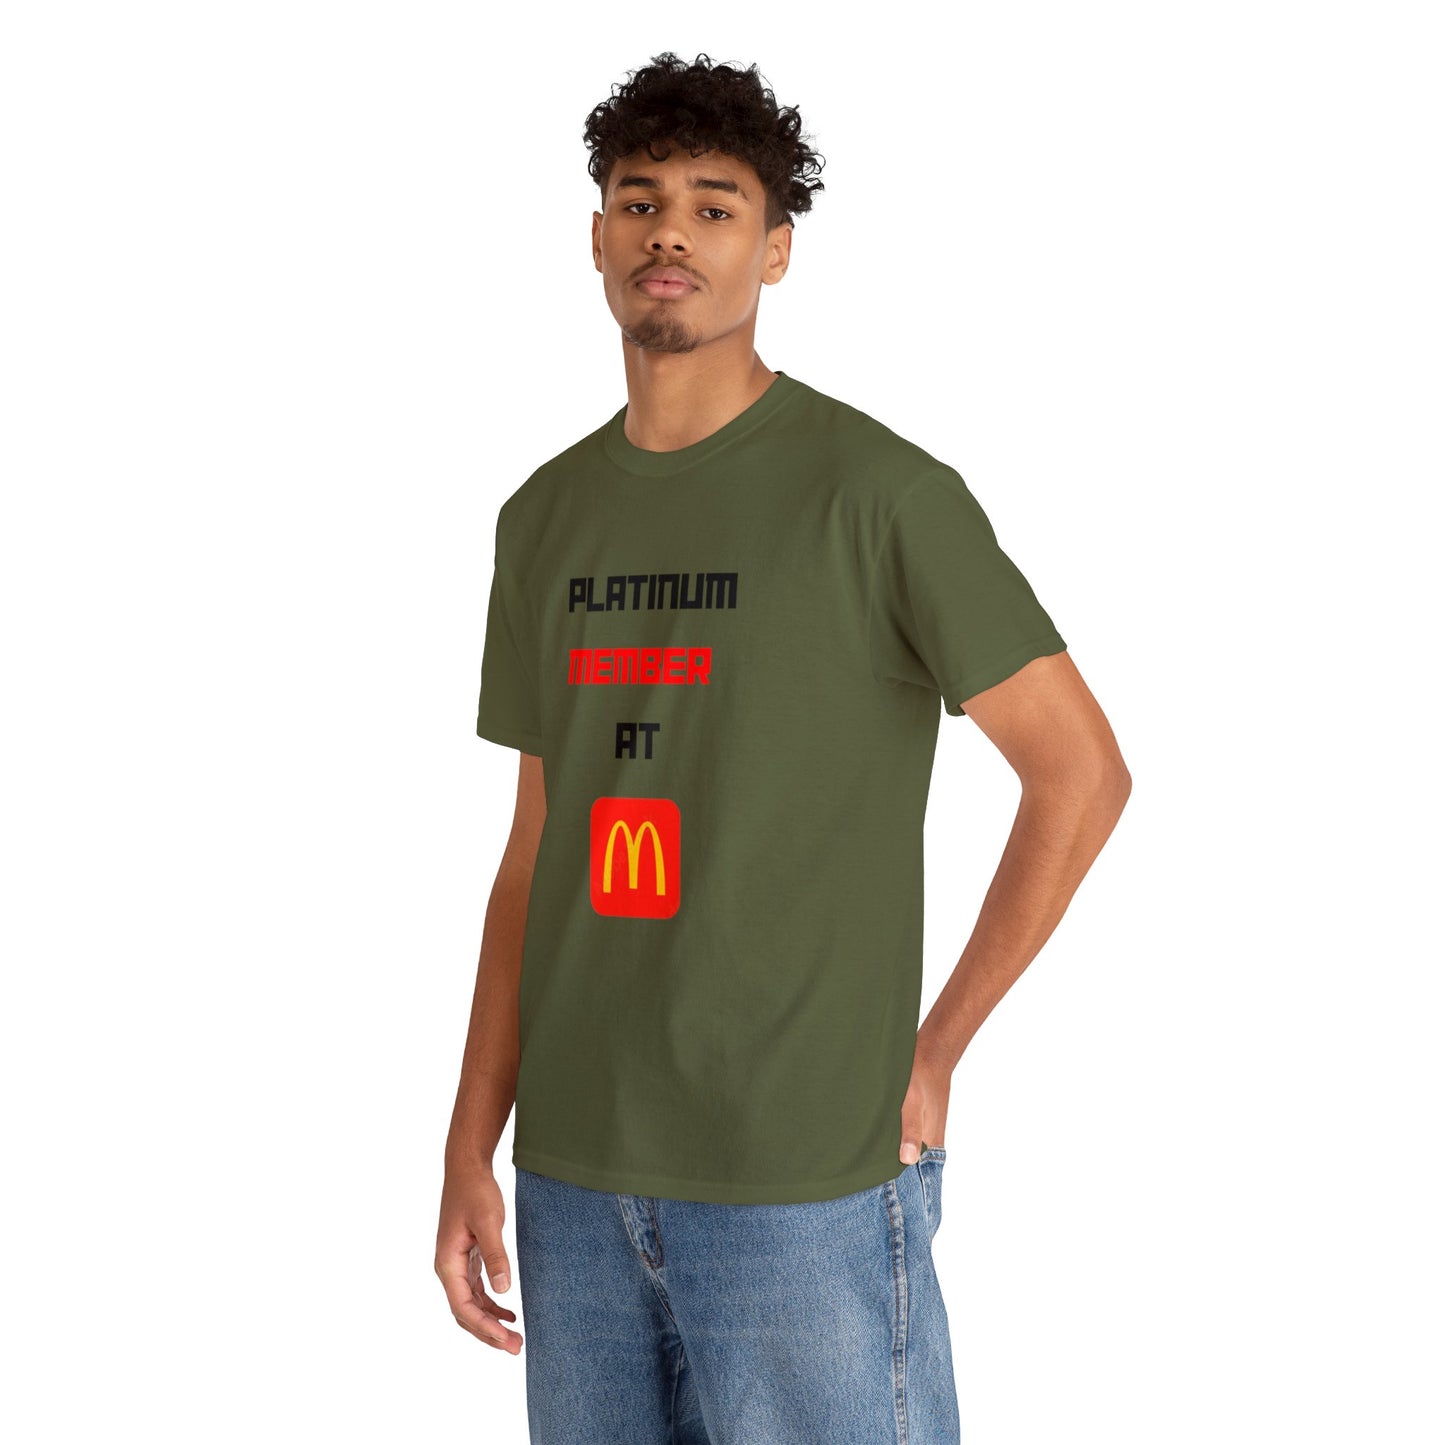 McDonalds MEMBER